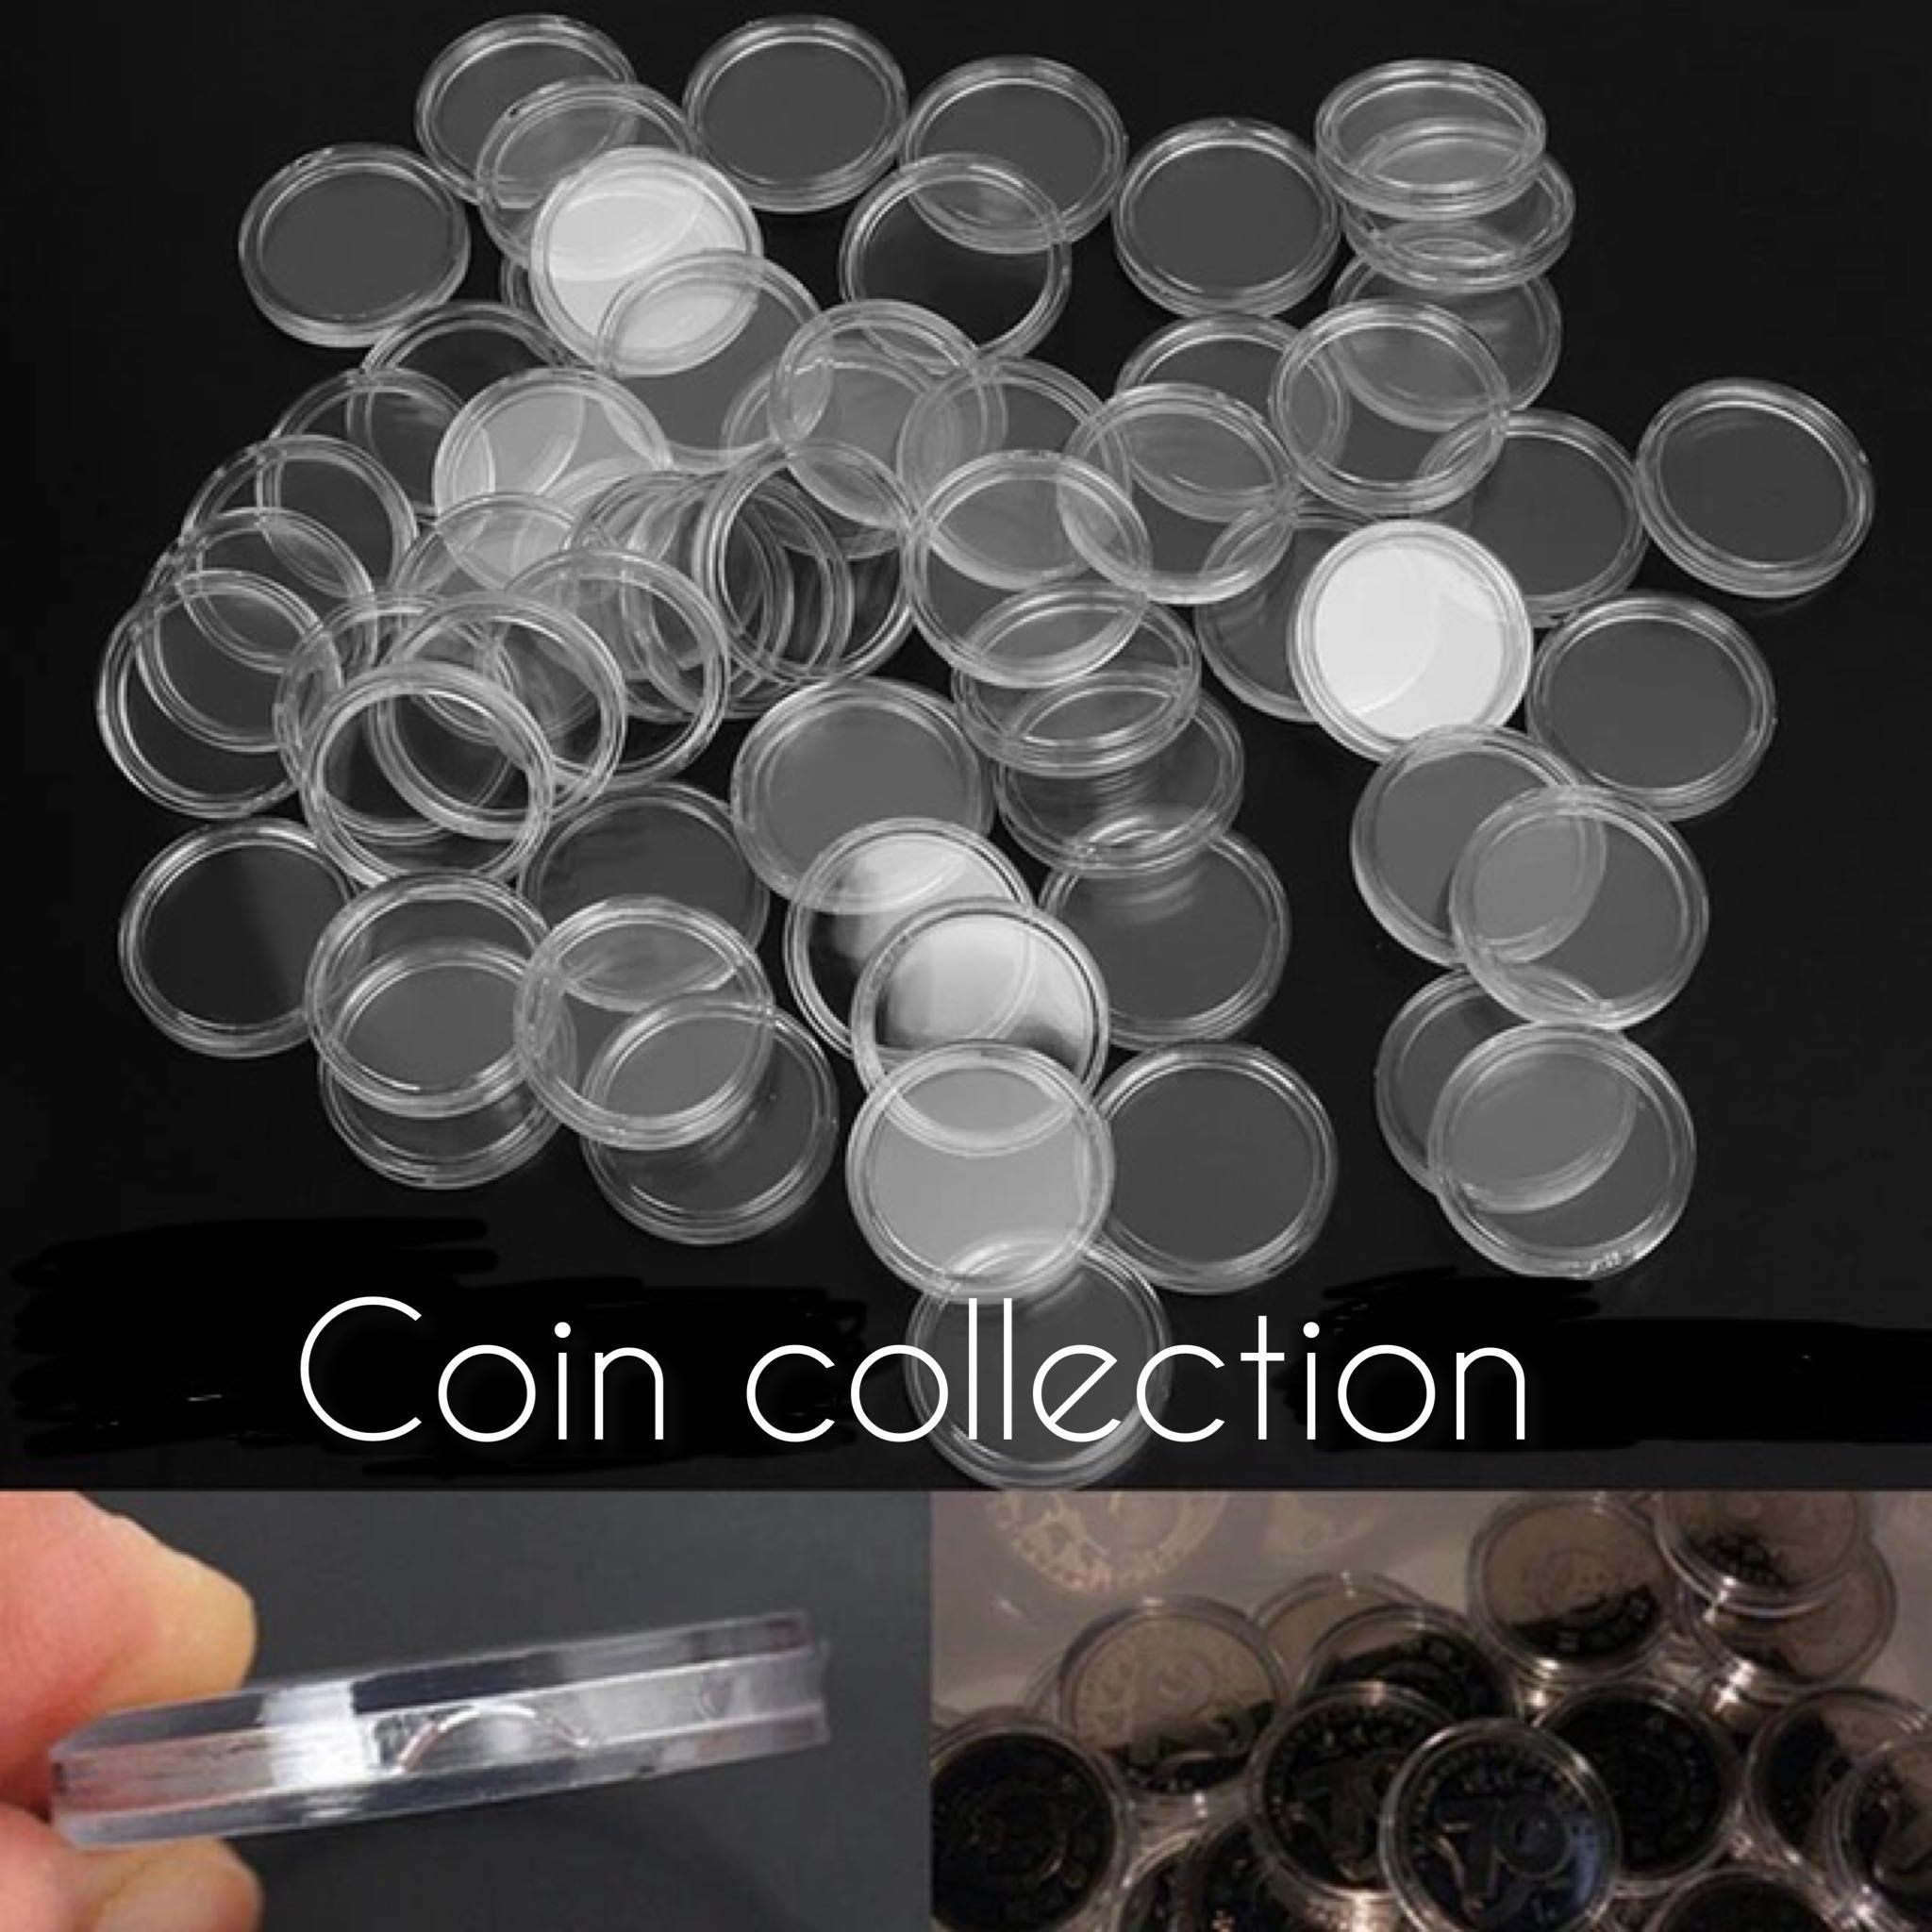 27 мм під гривню/Капсули для колекціонування монет